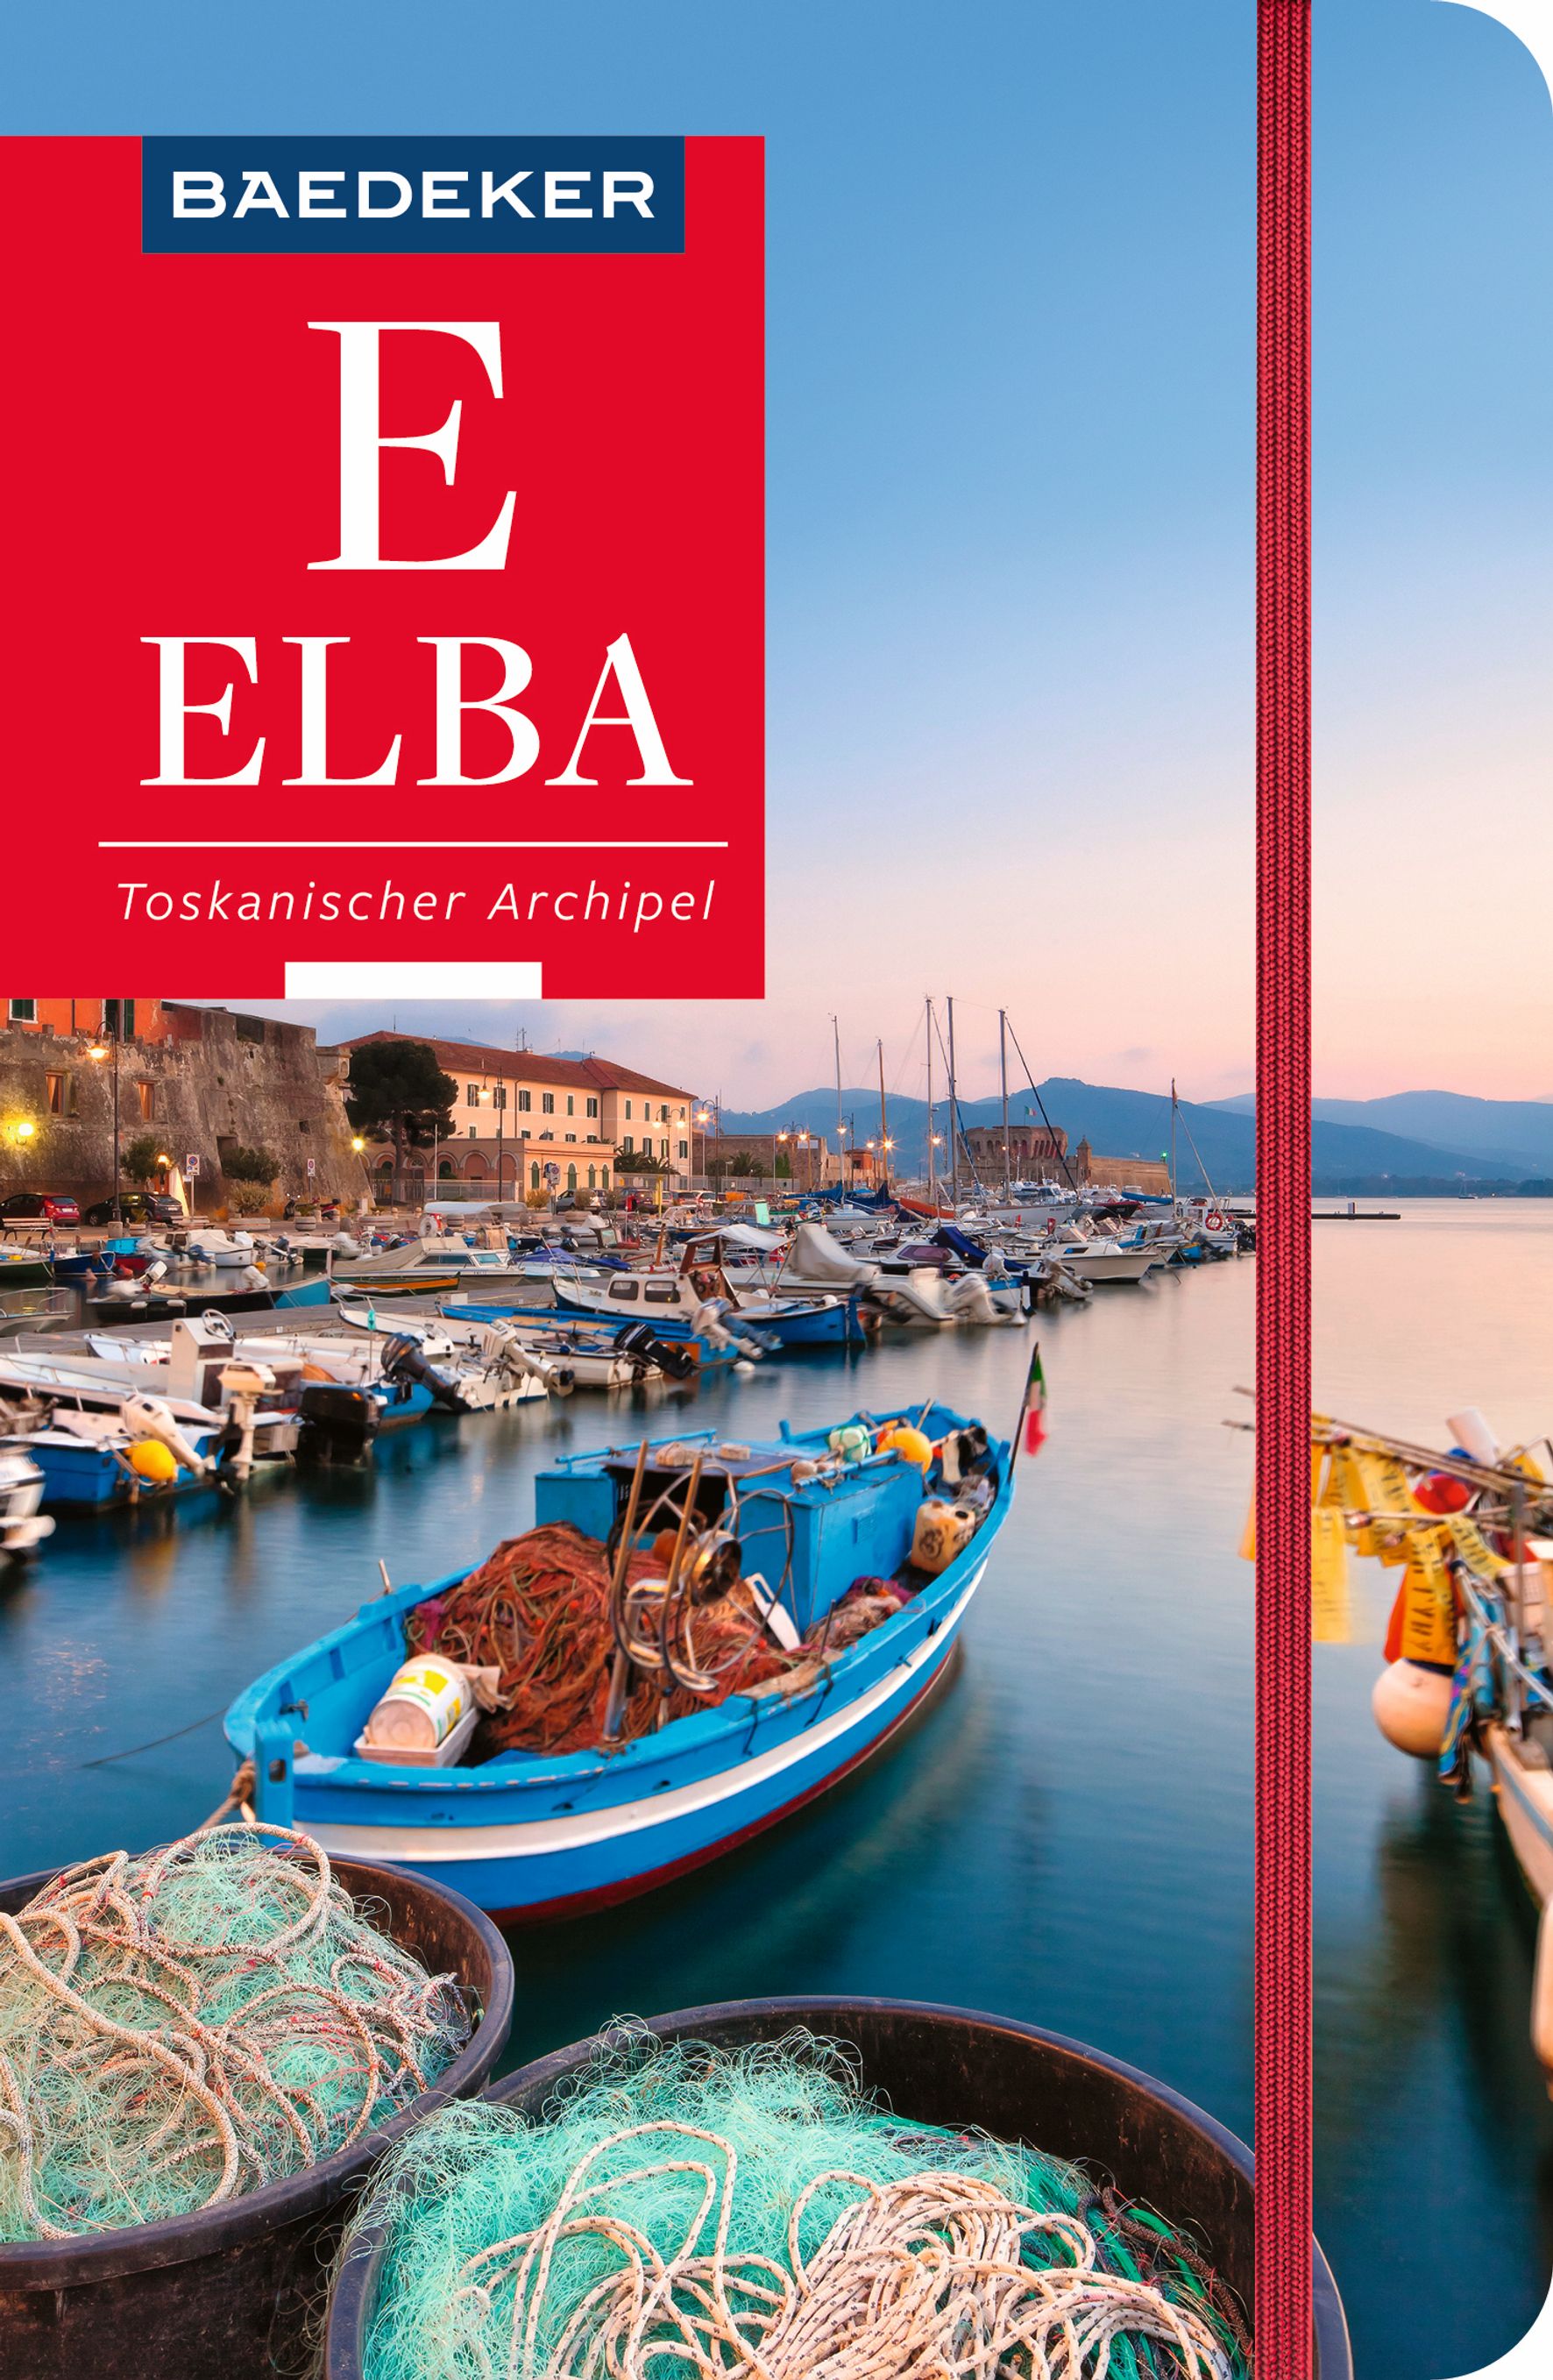 Baedeker Elba, Toskanischer Archipel (eBook)